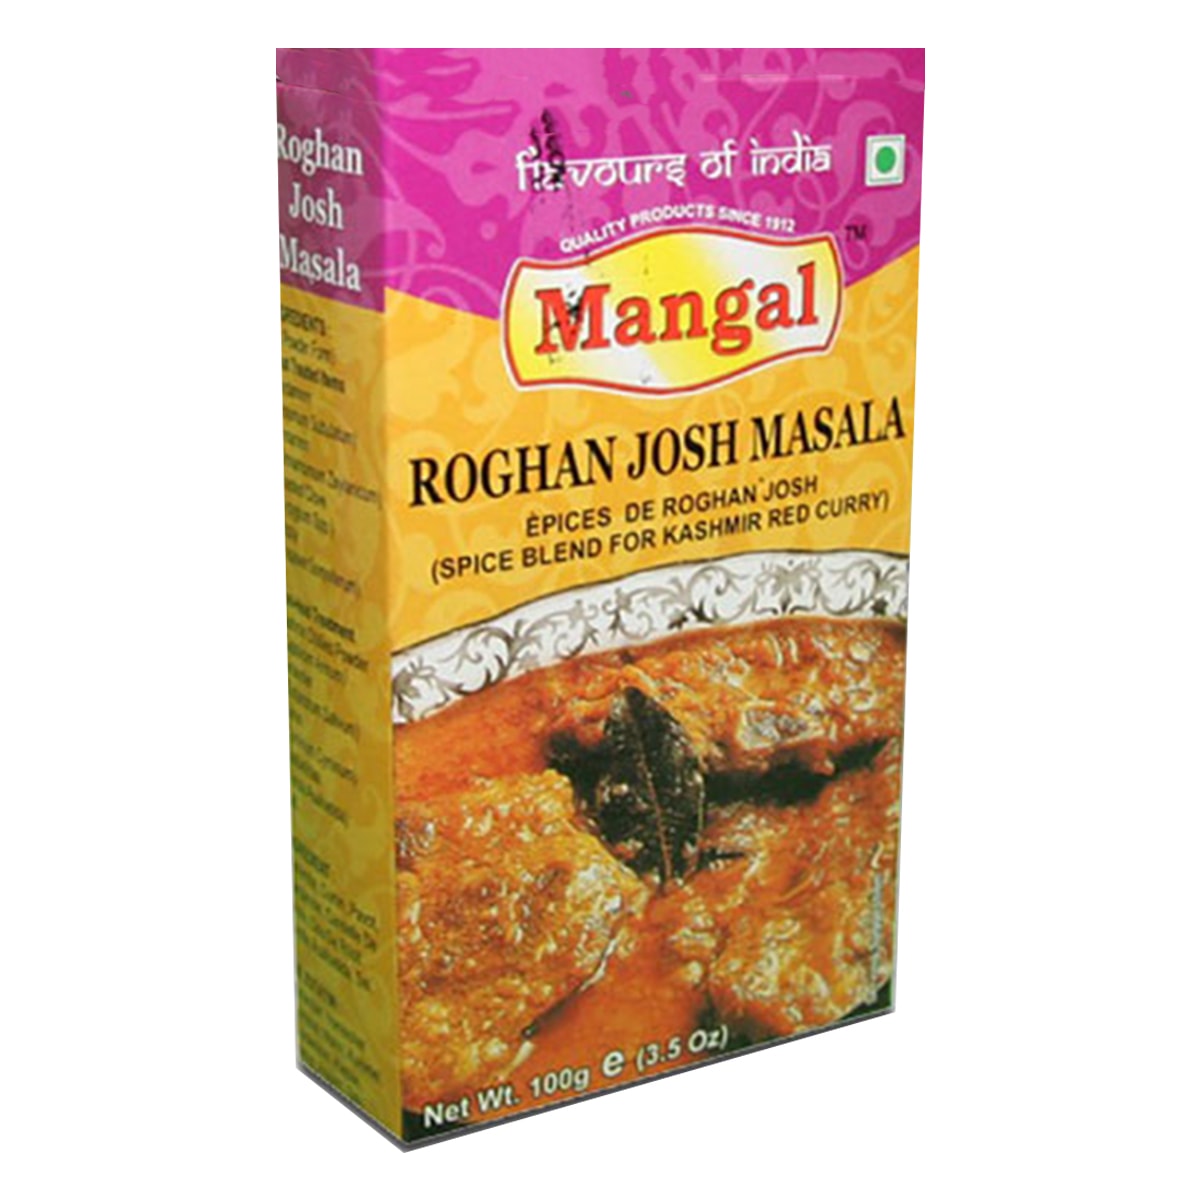 Buy Mangal Rogan Josh Masala - 50 gm